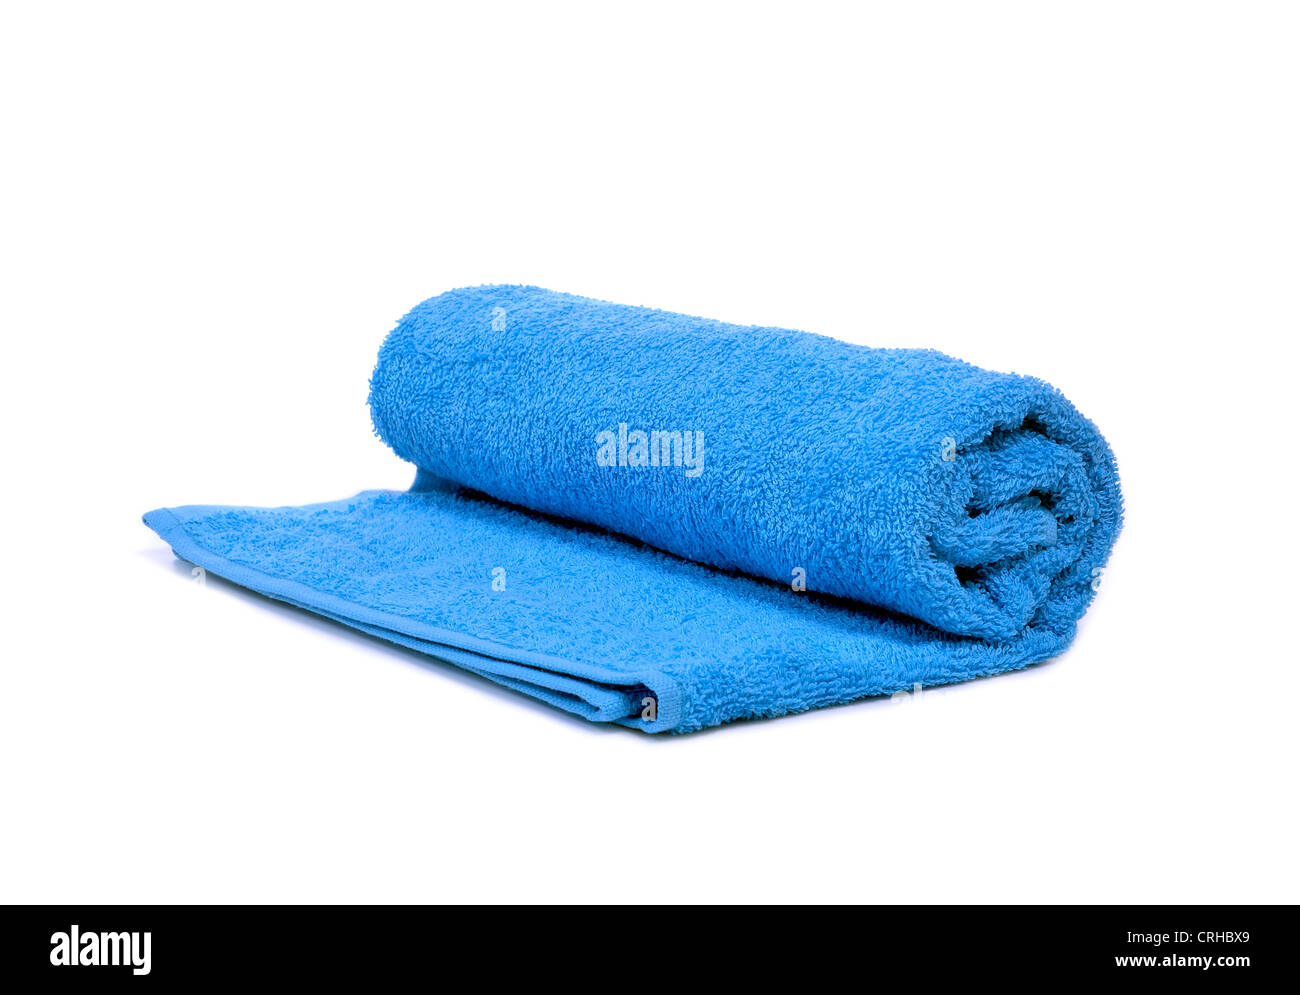 Une serviette bleu enroulé sur un fond blanc Banque D'Images